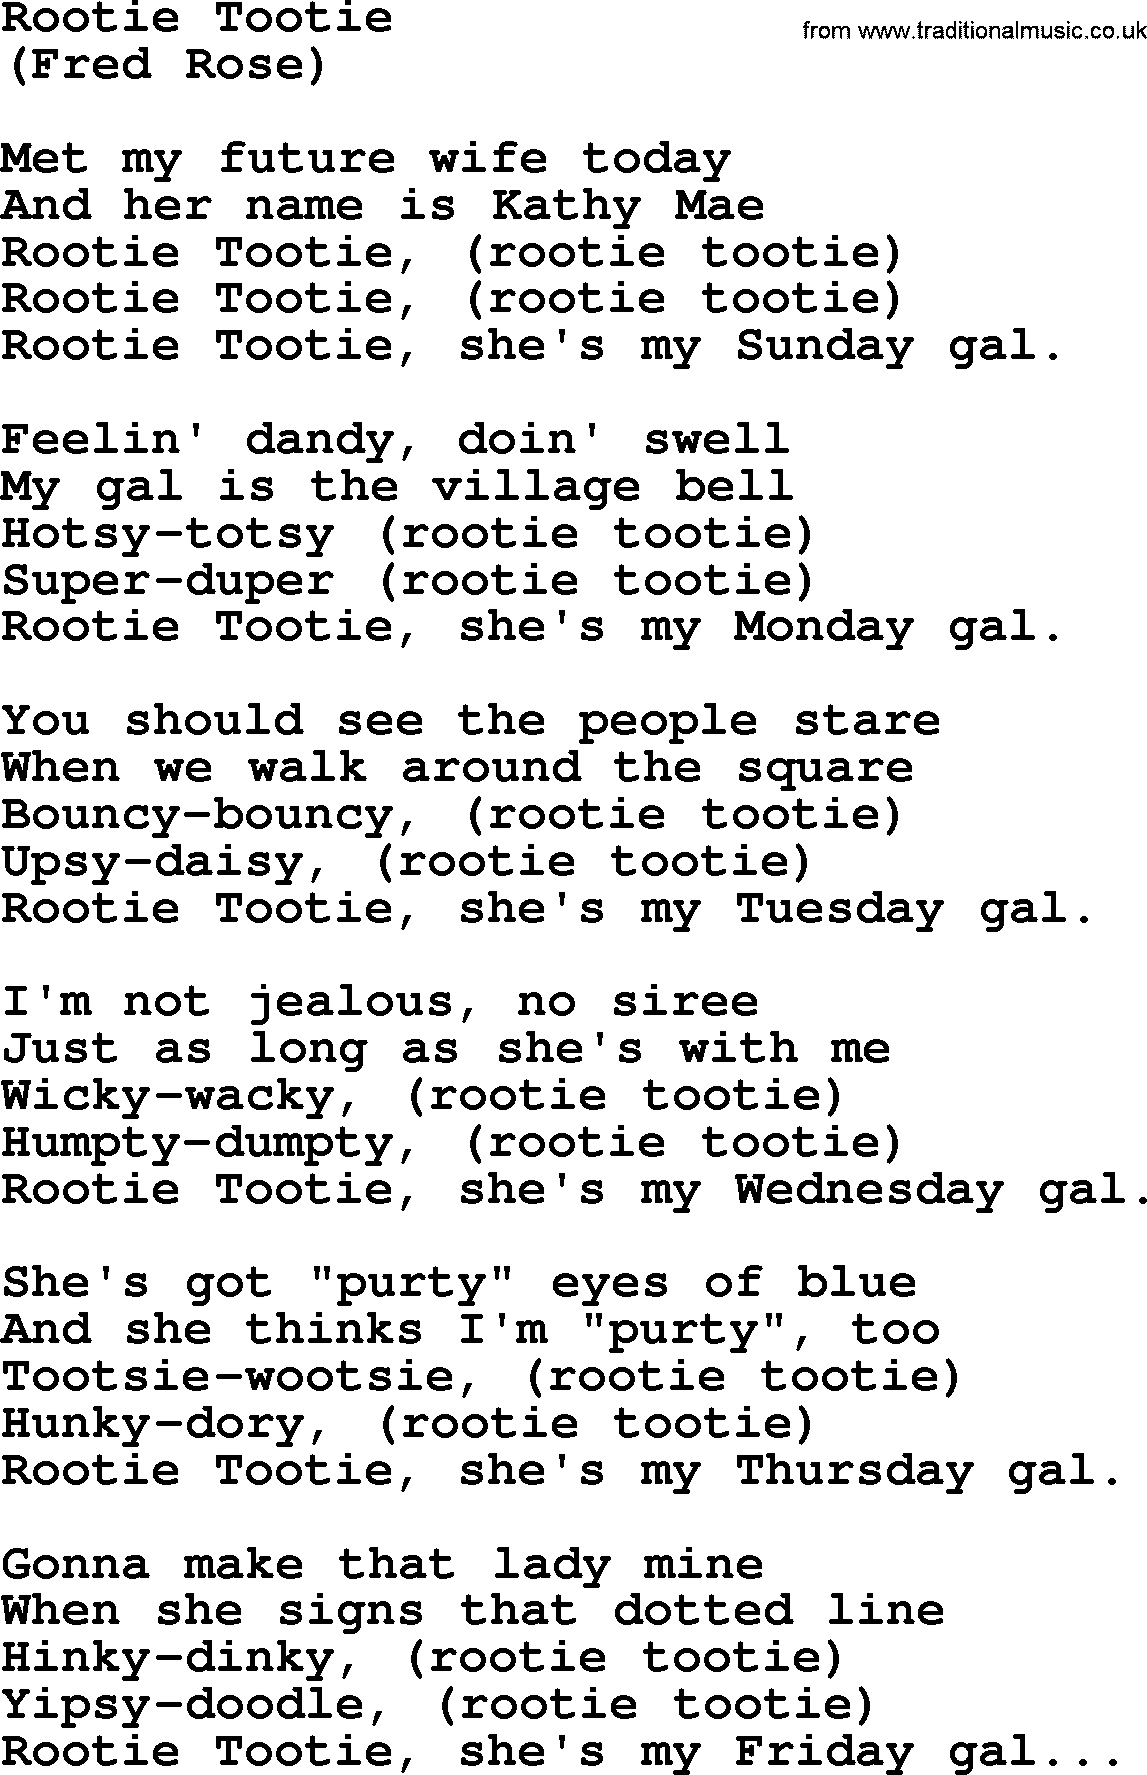 Hank Williams song Rootie Tootie, lyrics